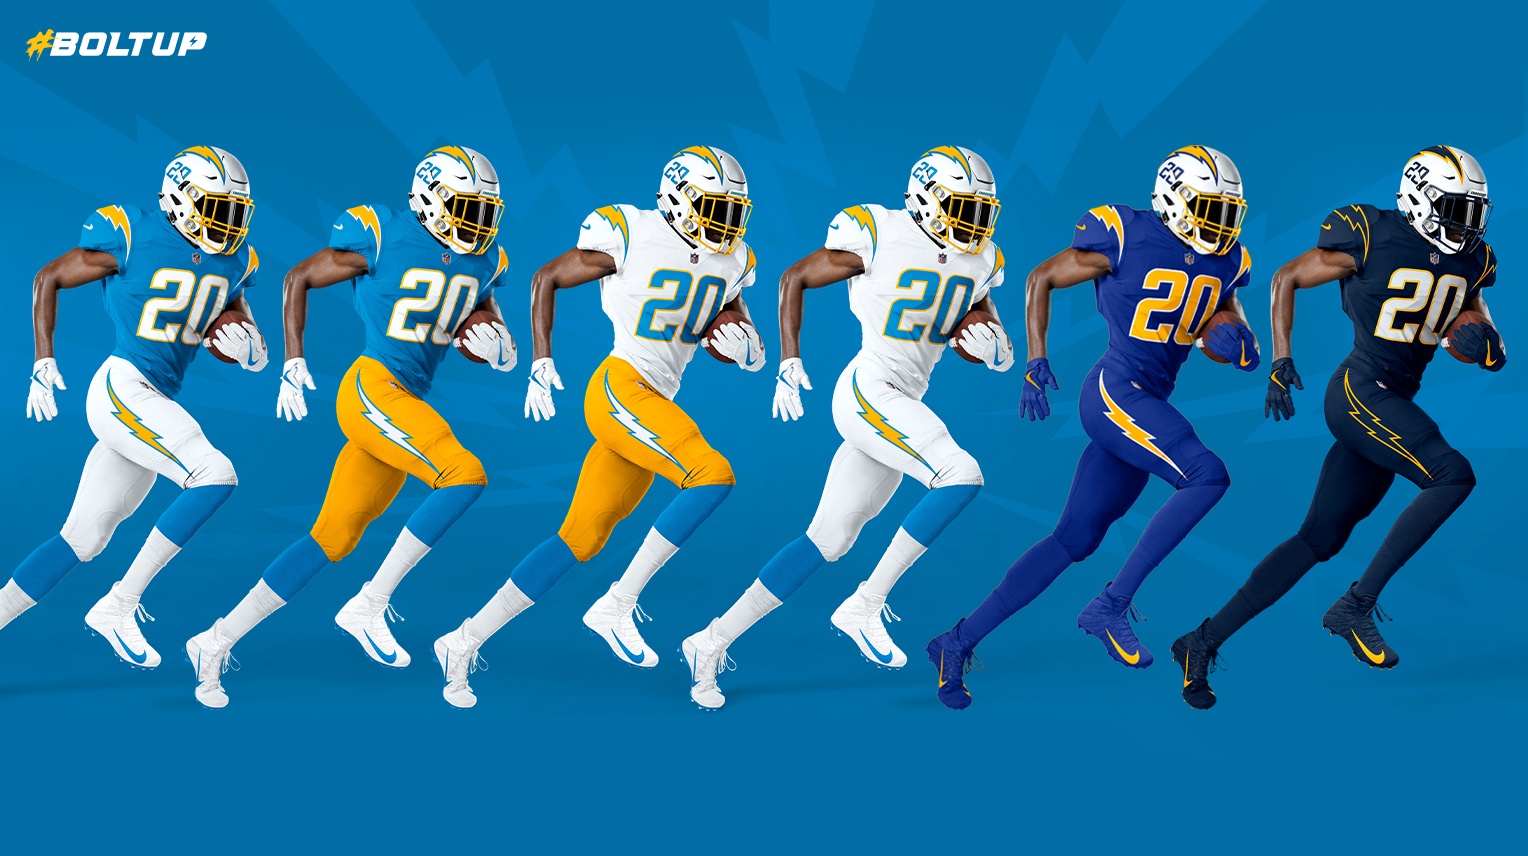 Introducing your 2021 LA Rams team - Los Angeles Rams